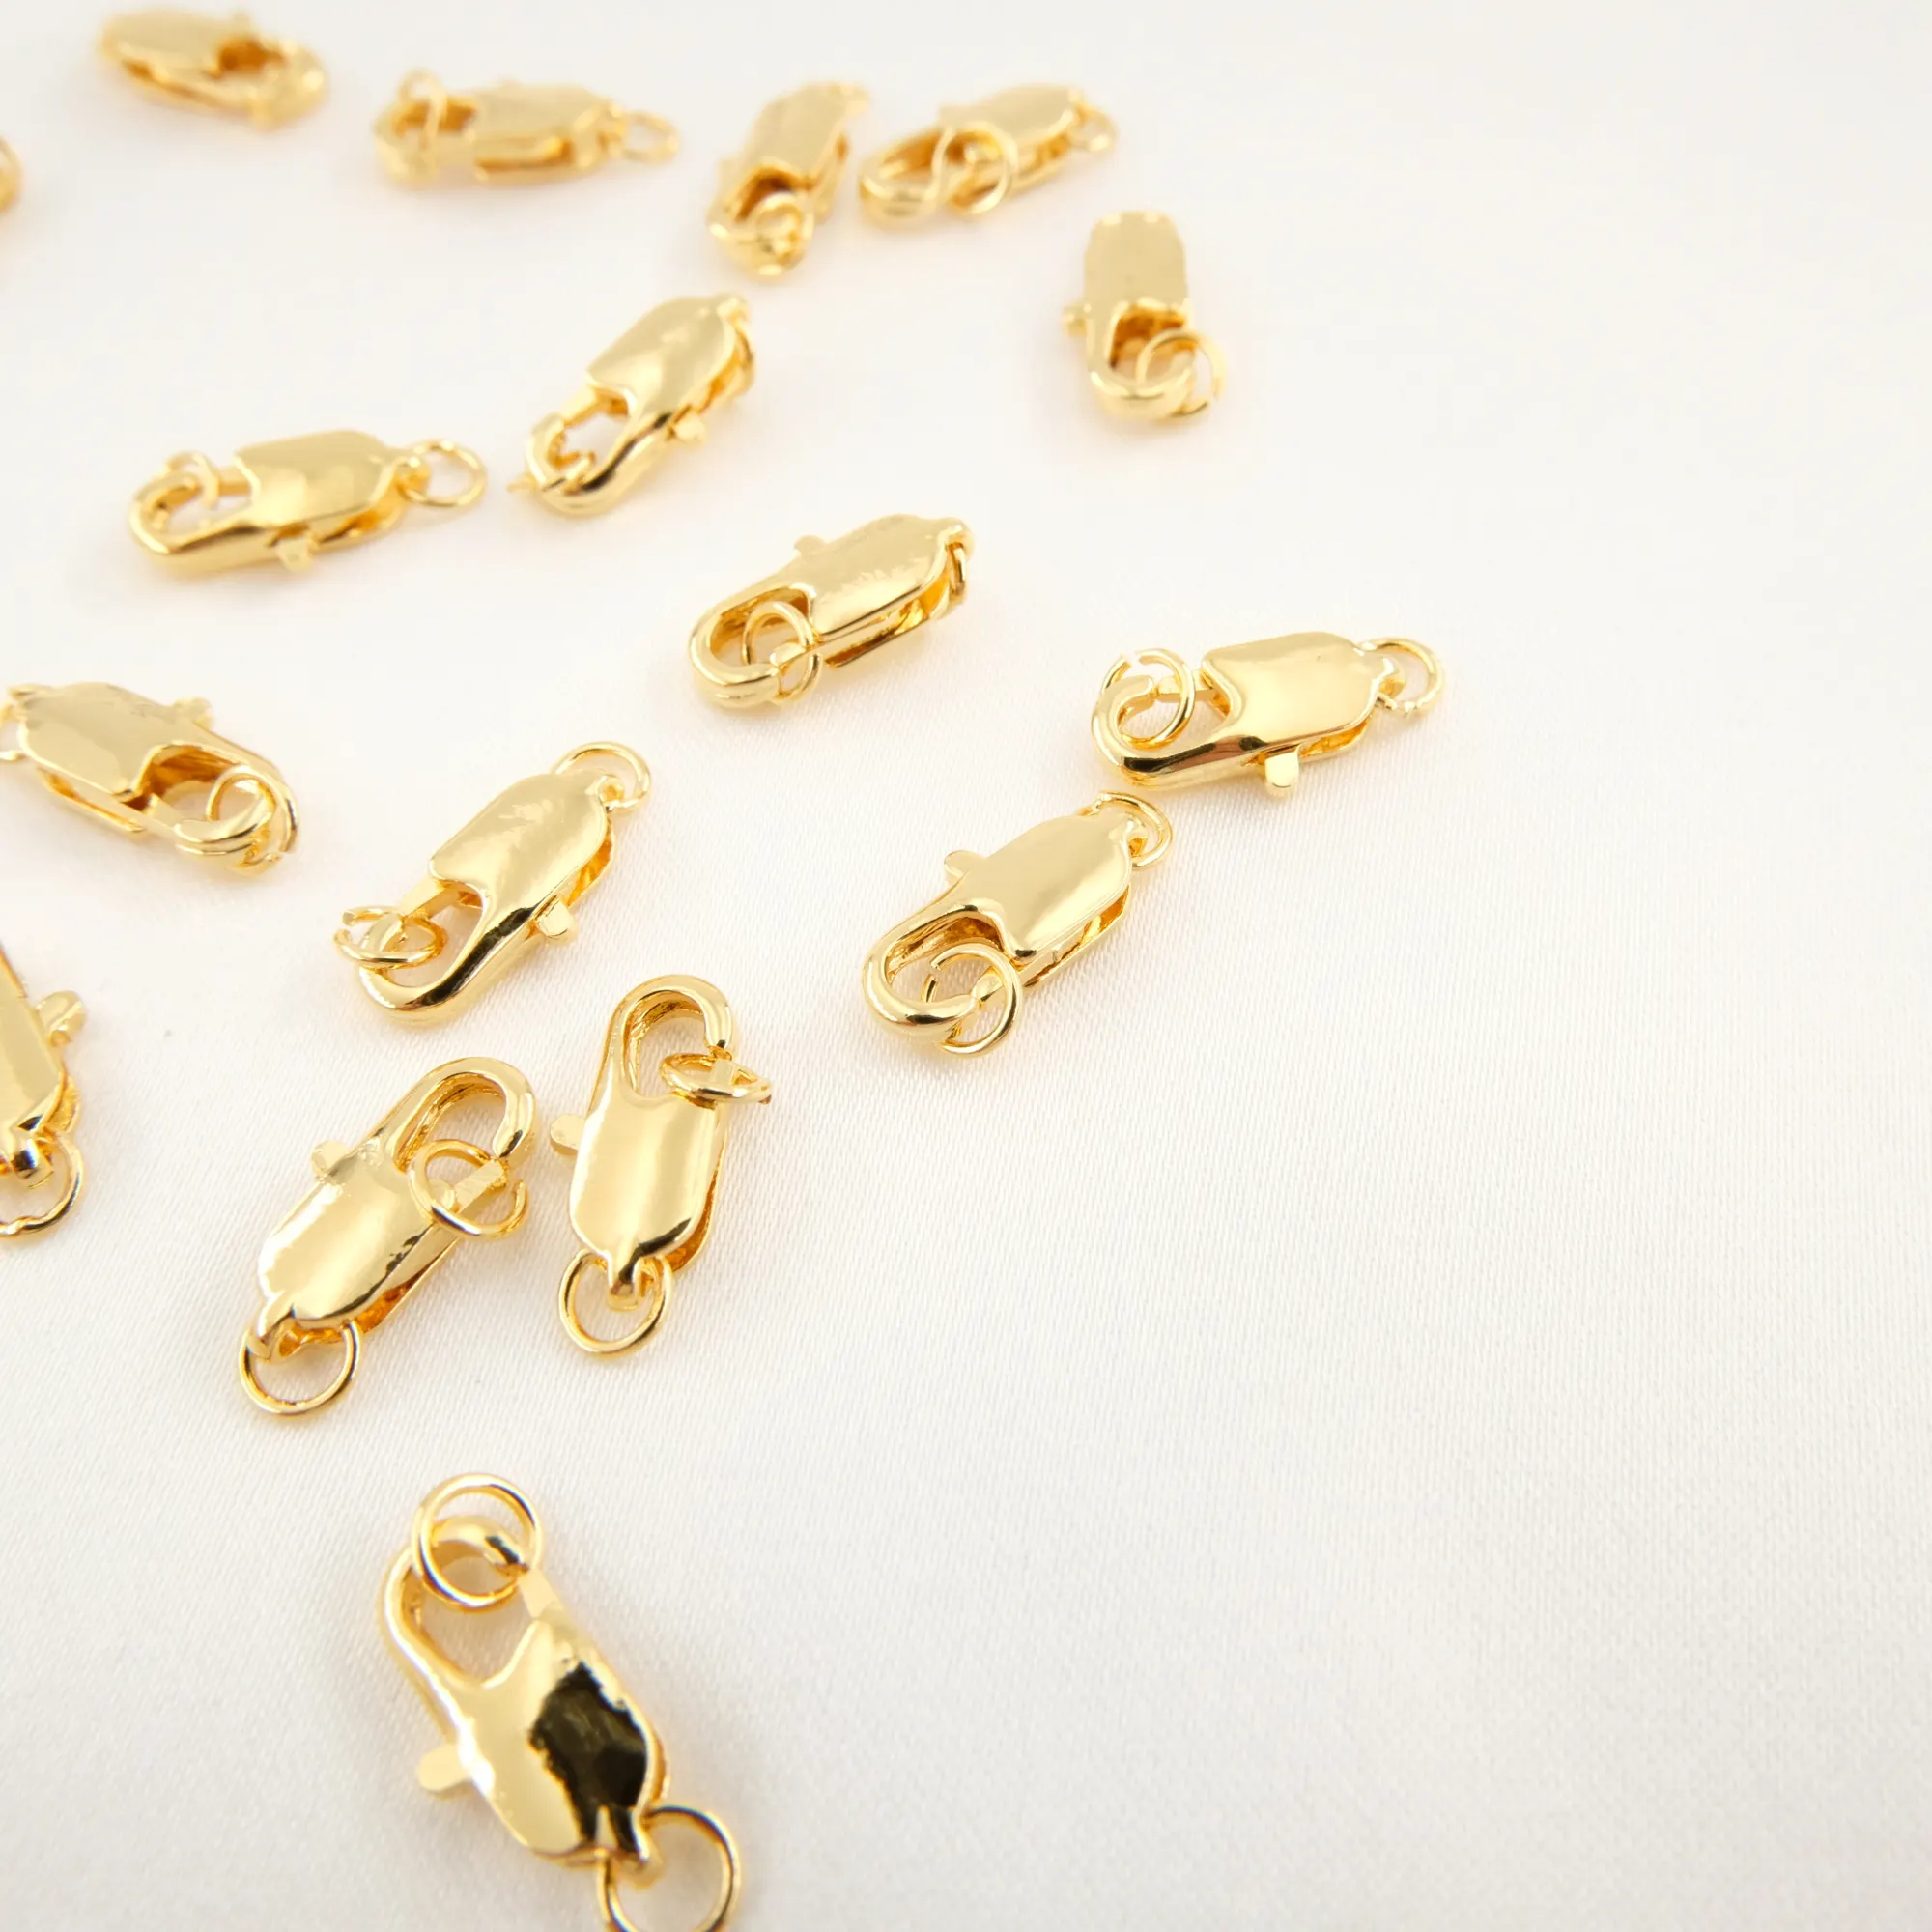 Fermaglio dell'anello della molla accessori di placcatura in oro 18k 801 fermaglio dei monili rame fibbia della coda chiusura dell'aragosta della molla